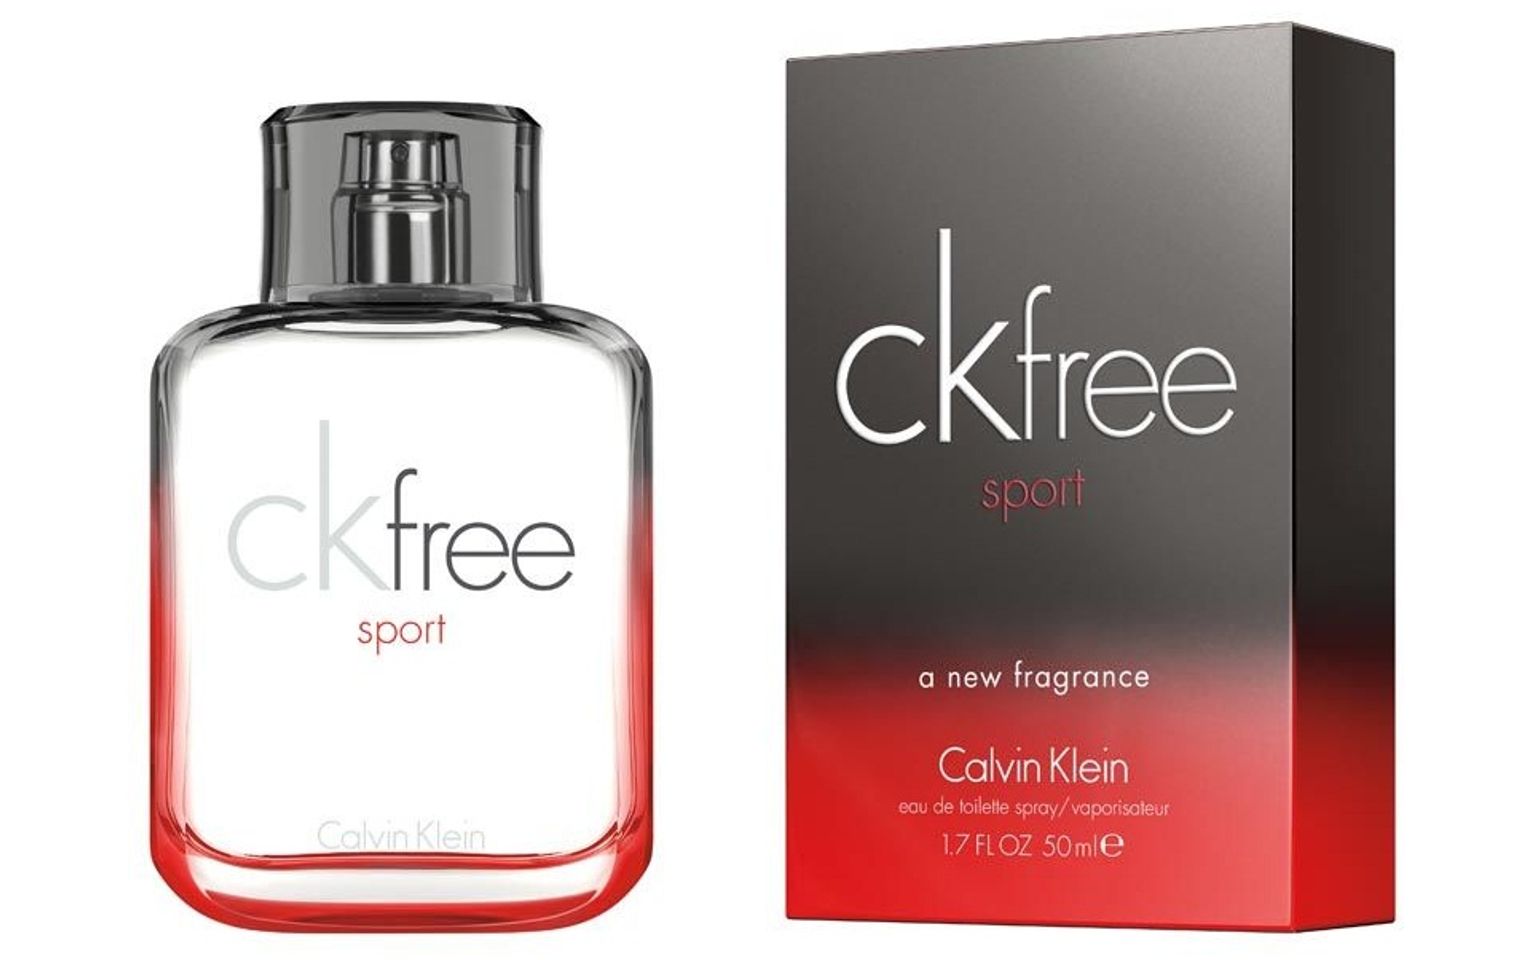 Nước hoa Calvin Klein (CK) CK free for men mang hương thơm tươi mát, nam tính, tràn đầy năng lượng